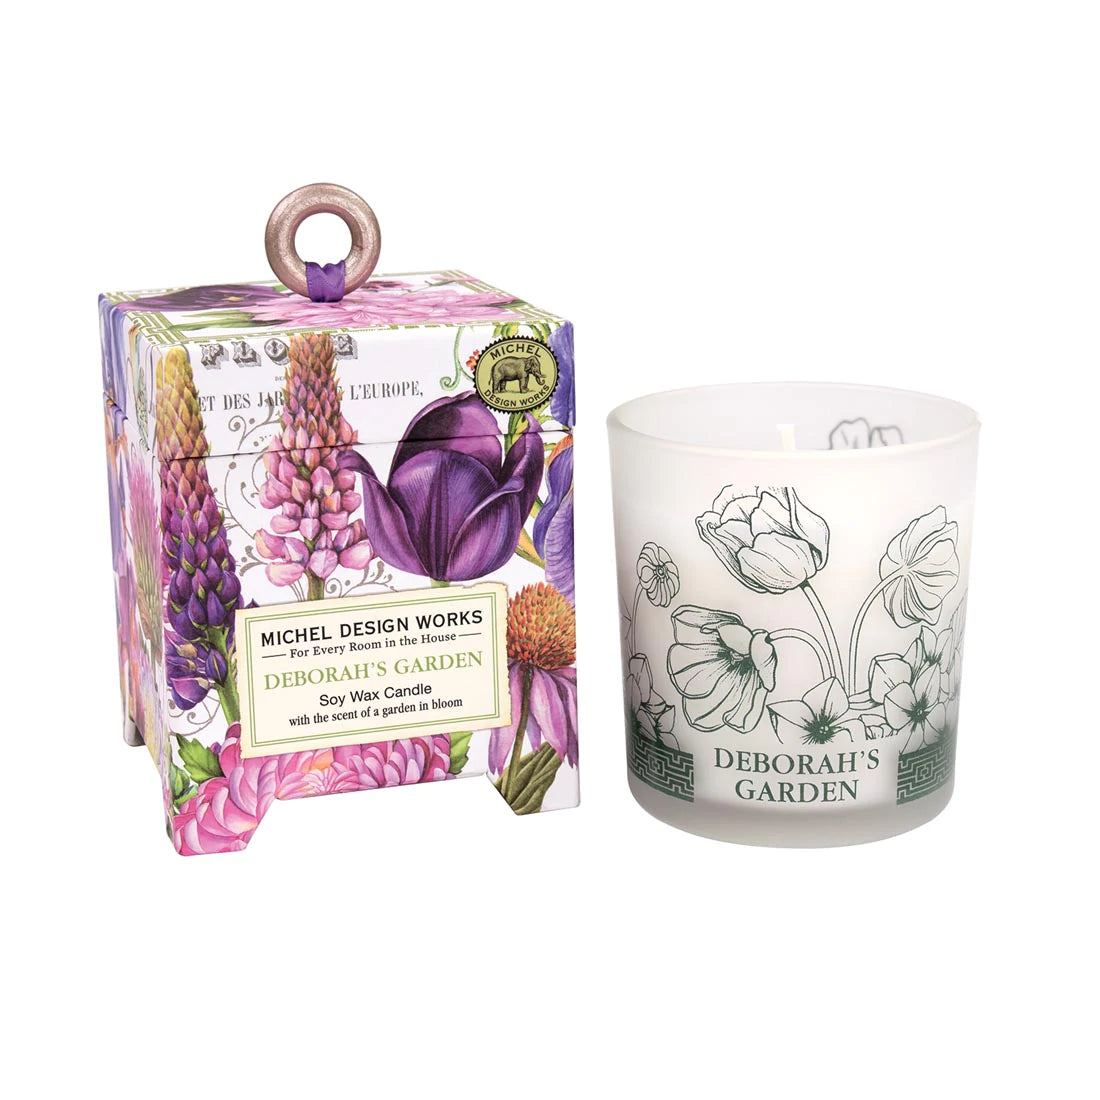 Deborah's Garden 6.5 oz. Soy Wax Candle - Zinnias Gift Boutique